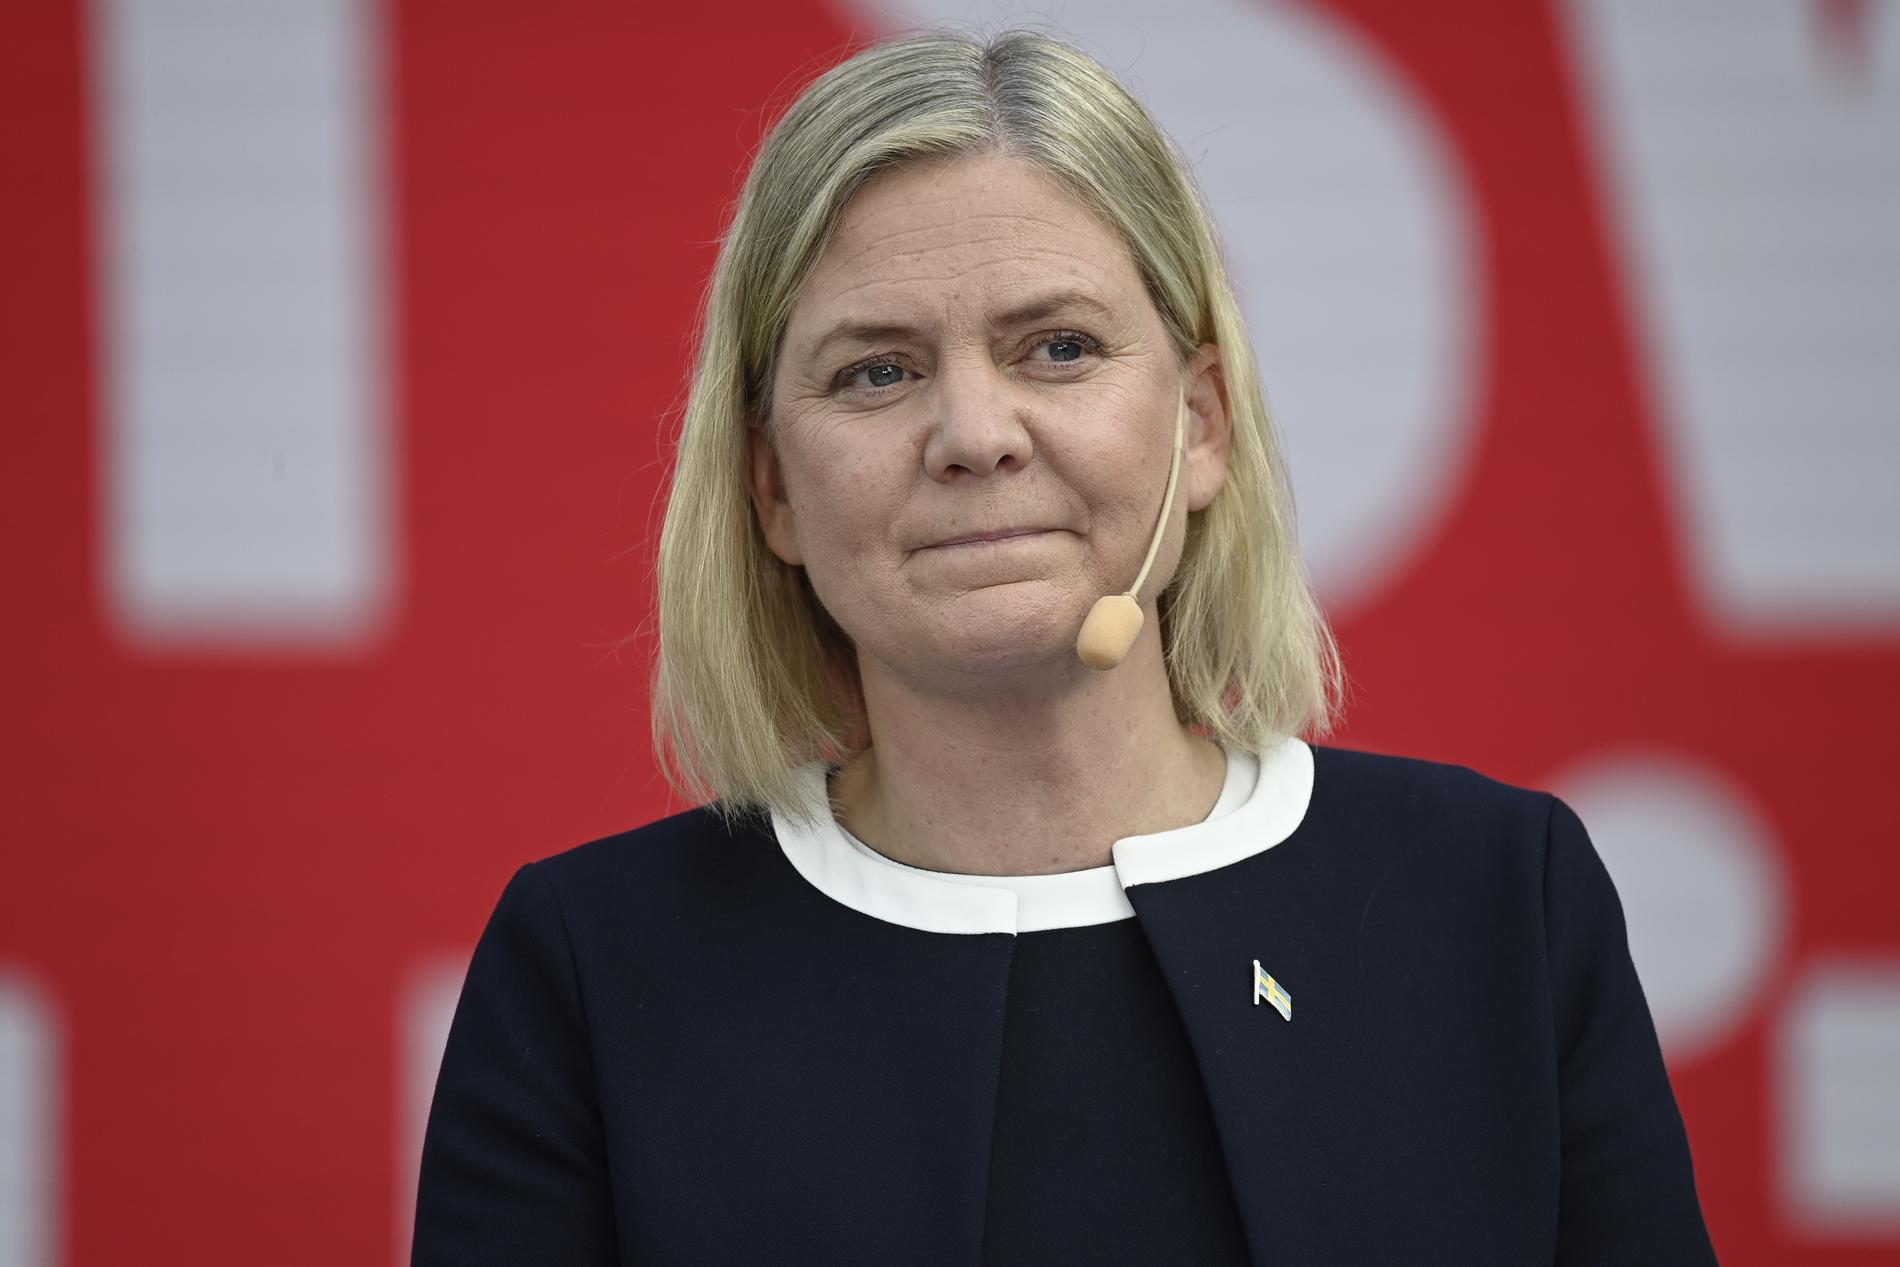 ”Lyxbåtarna blir fler - skolkuratorerna färre” sa statsministern om hur Sverige skulle bli med en högerkonservativ regering. 